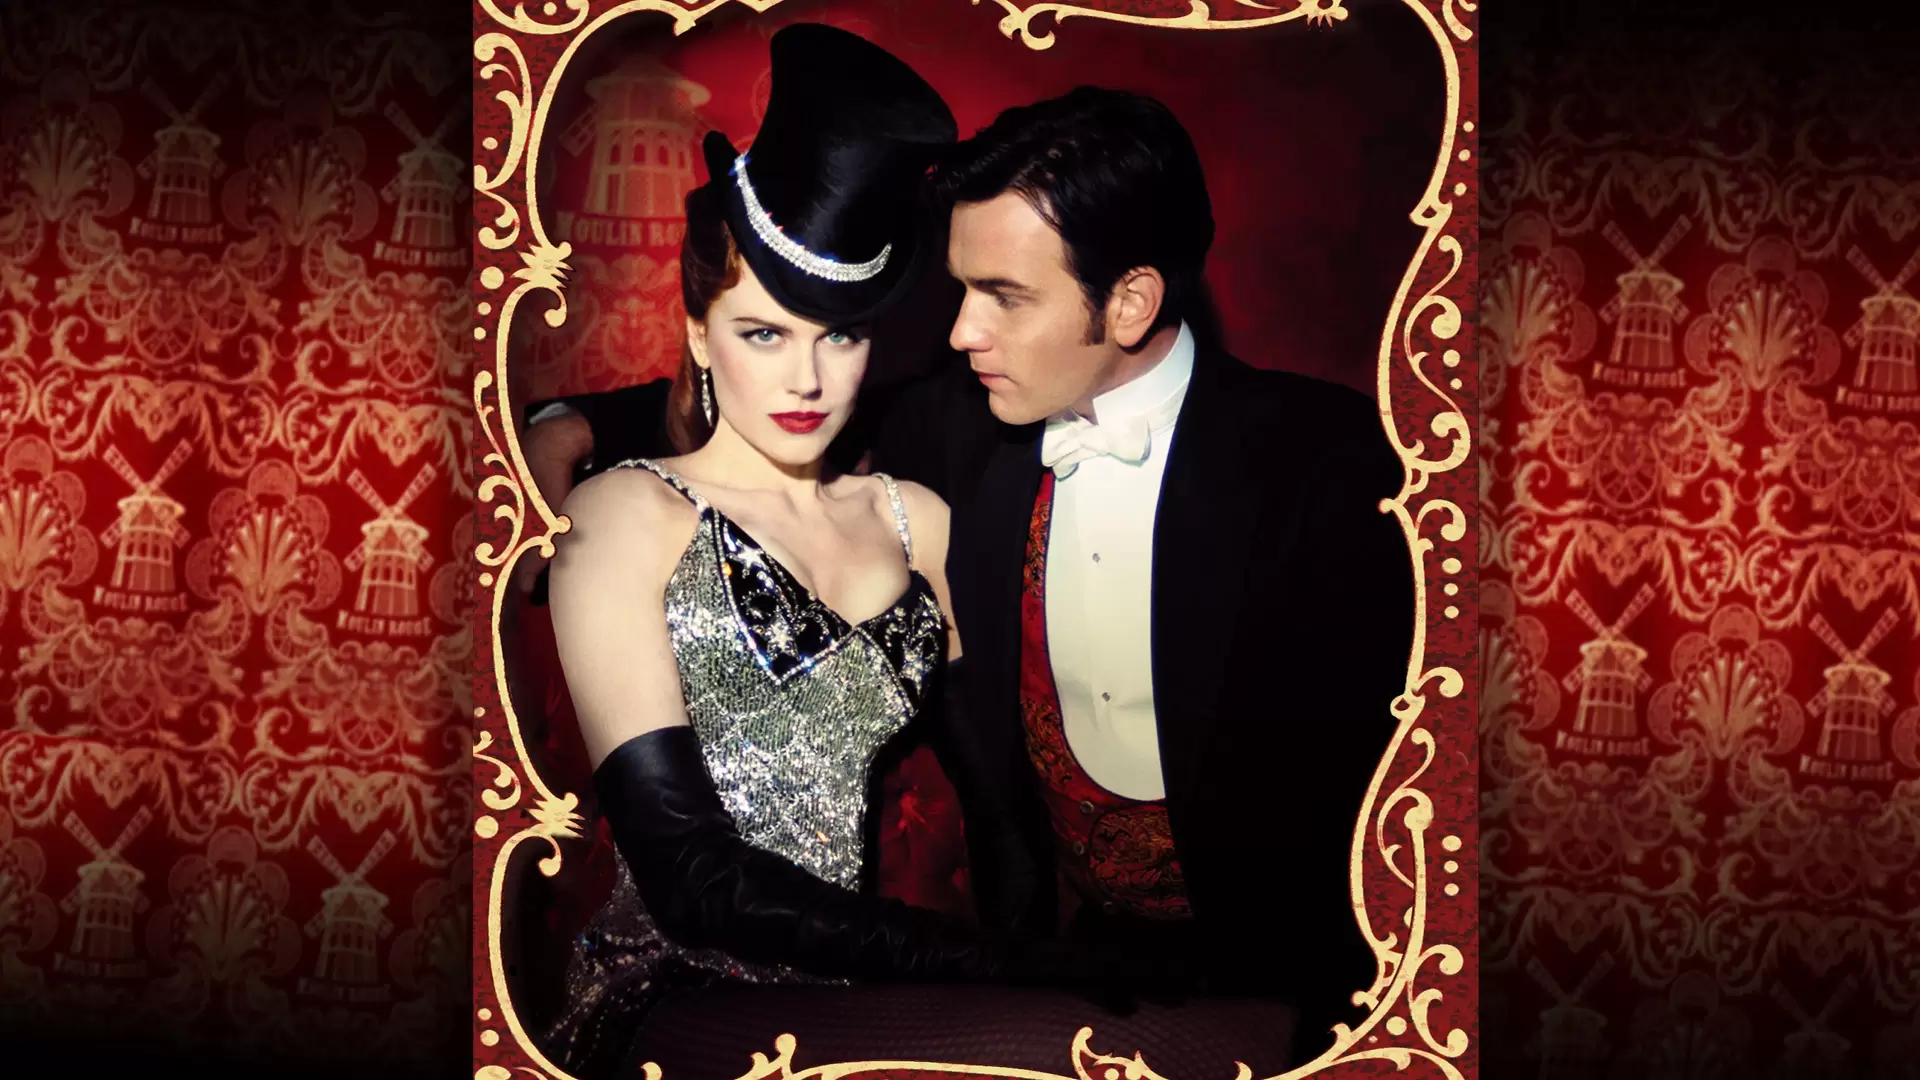 دانلود فیلم Moulin Rouge! 2001 (مولان روژ) با زیرنویس فارسی و تماشای آنلاین